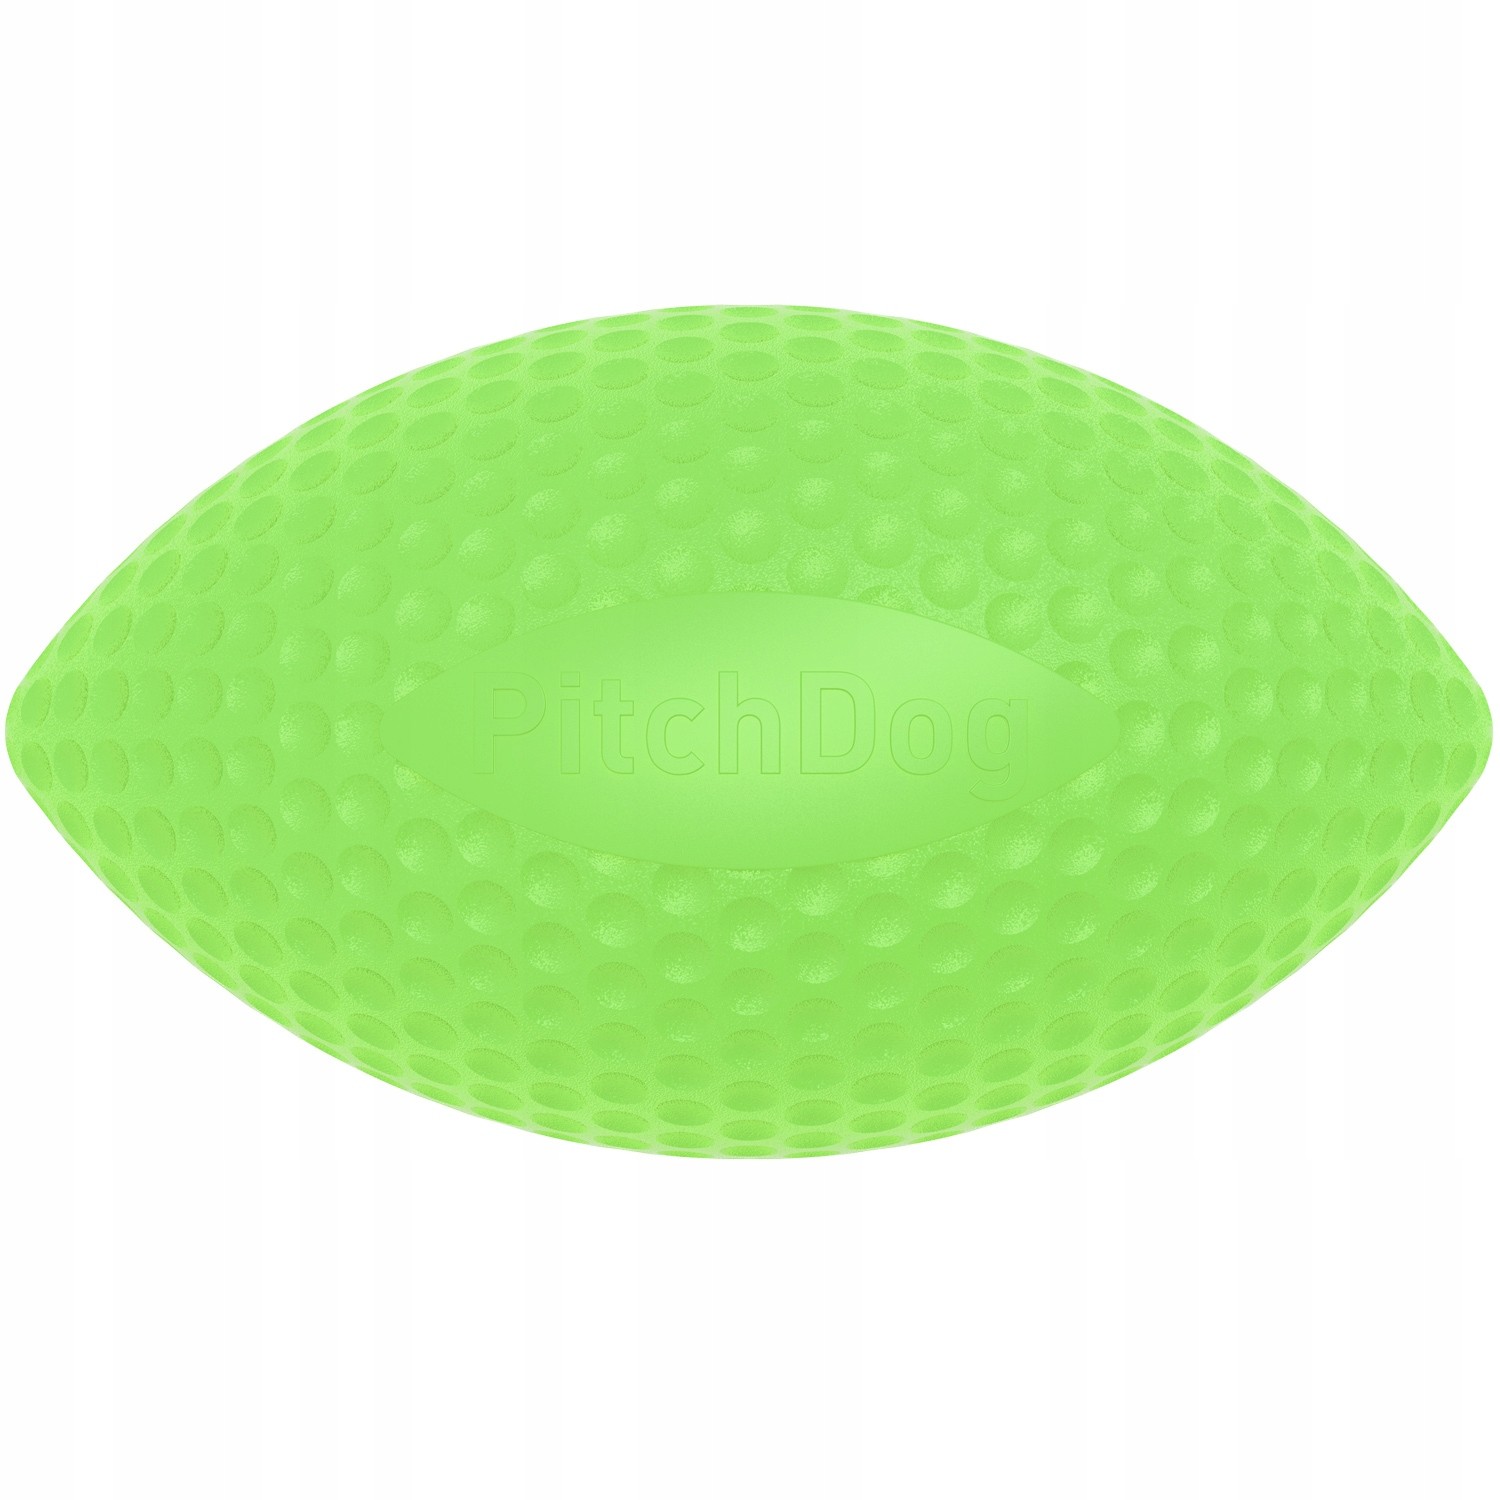 PitchDog sportovní míč, průměr 9 cm, zelený